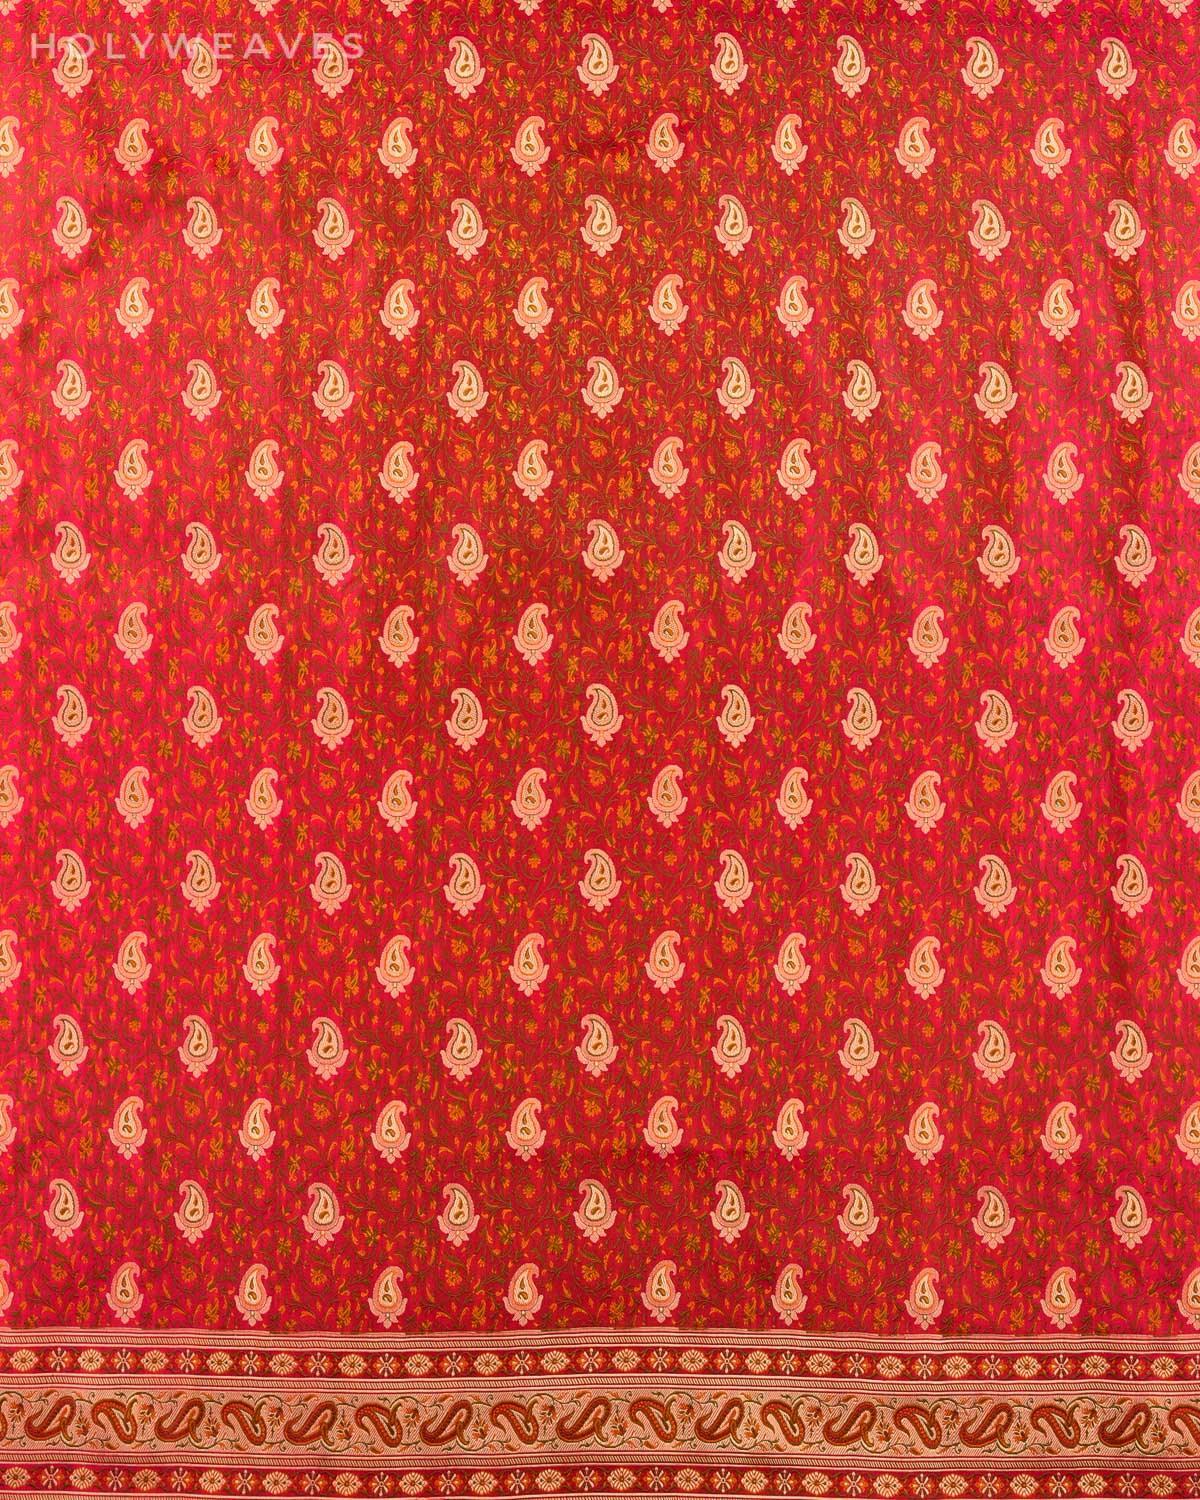 Shot Pink Red Banarasi Tehri Jamawar Brocade Handwoven Katan Silk Saree with Zari Paisley Buti - By HolyWeaves, Benares